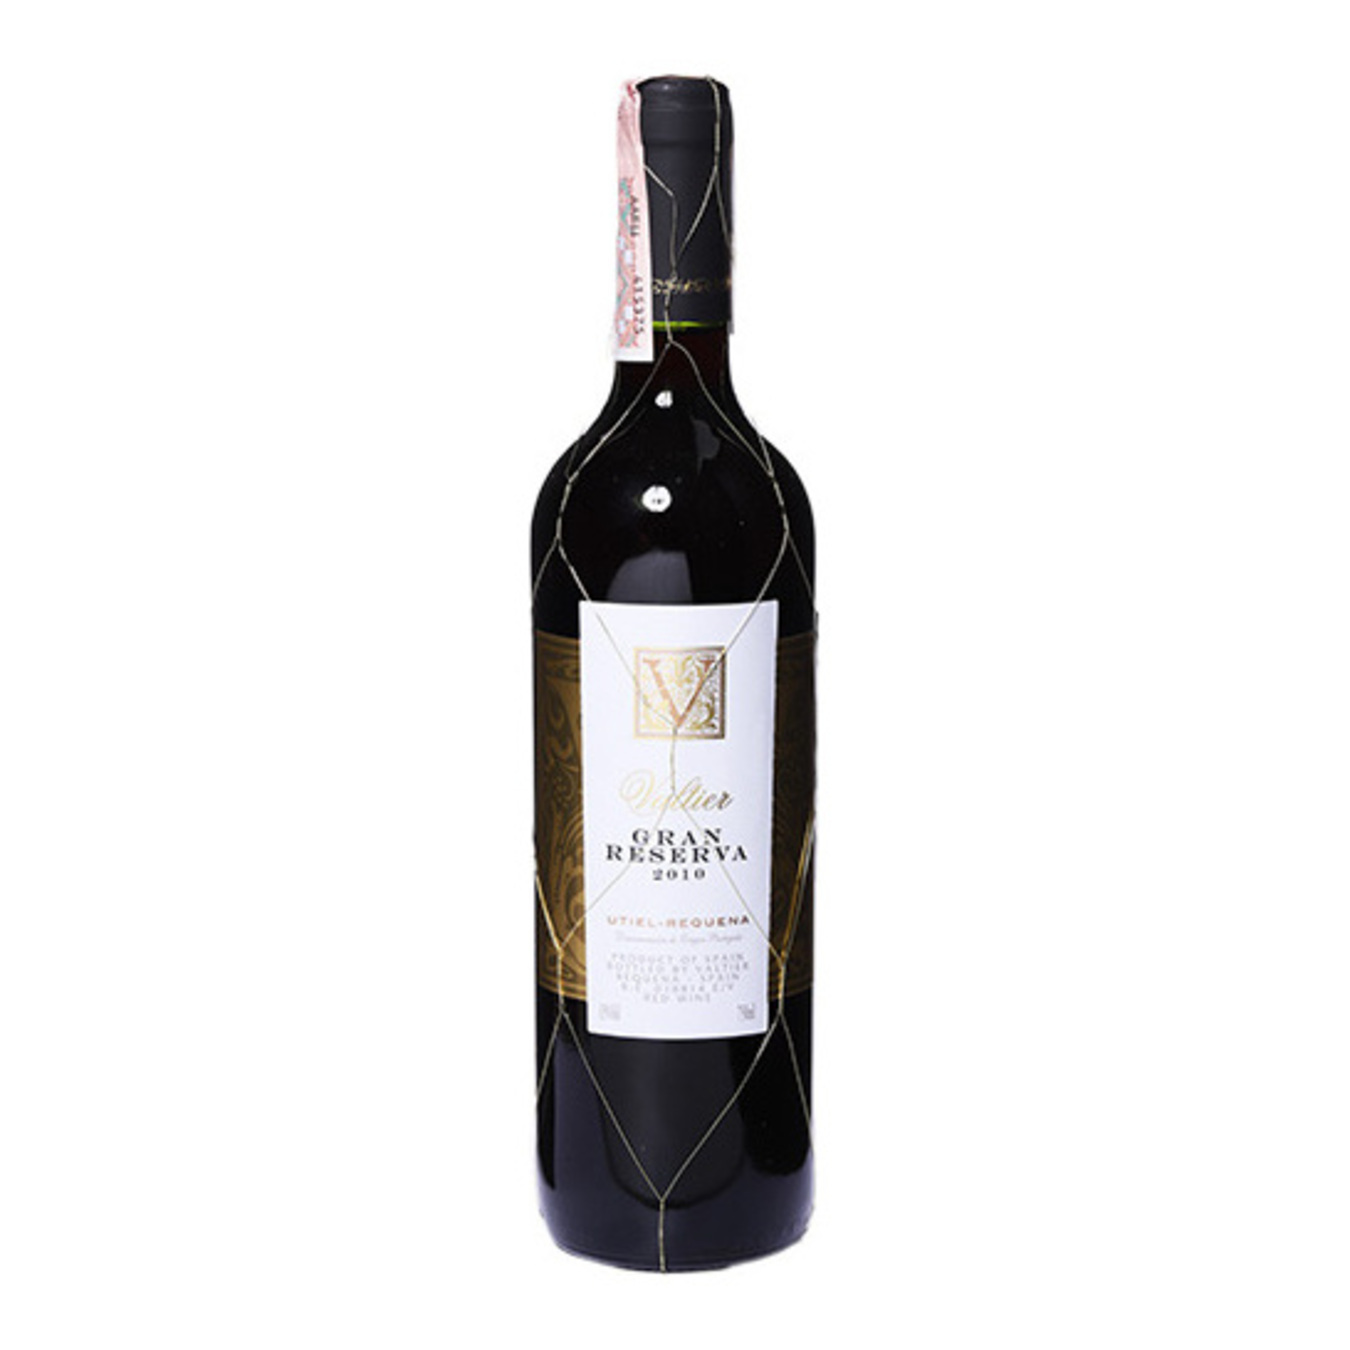 Вино Valtier Gran Reserva Utiel-Requena красное сухое 13% 0,75л